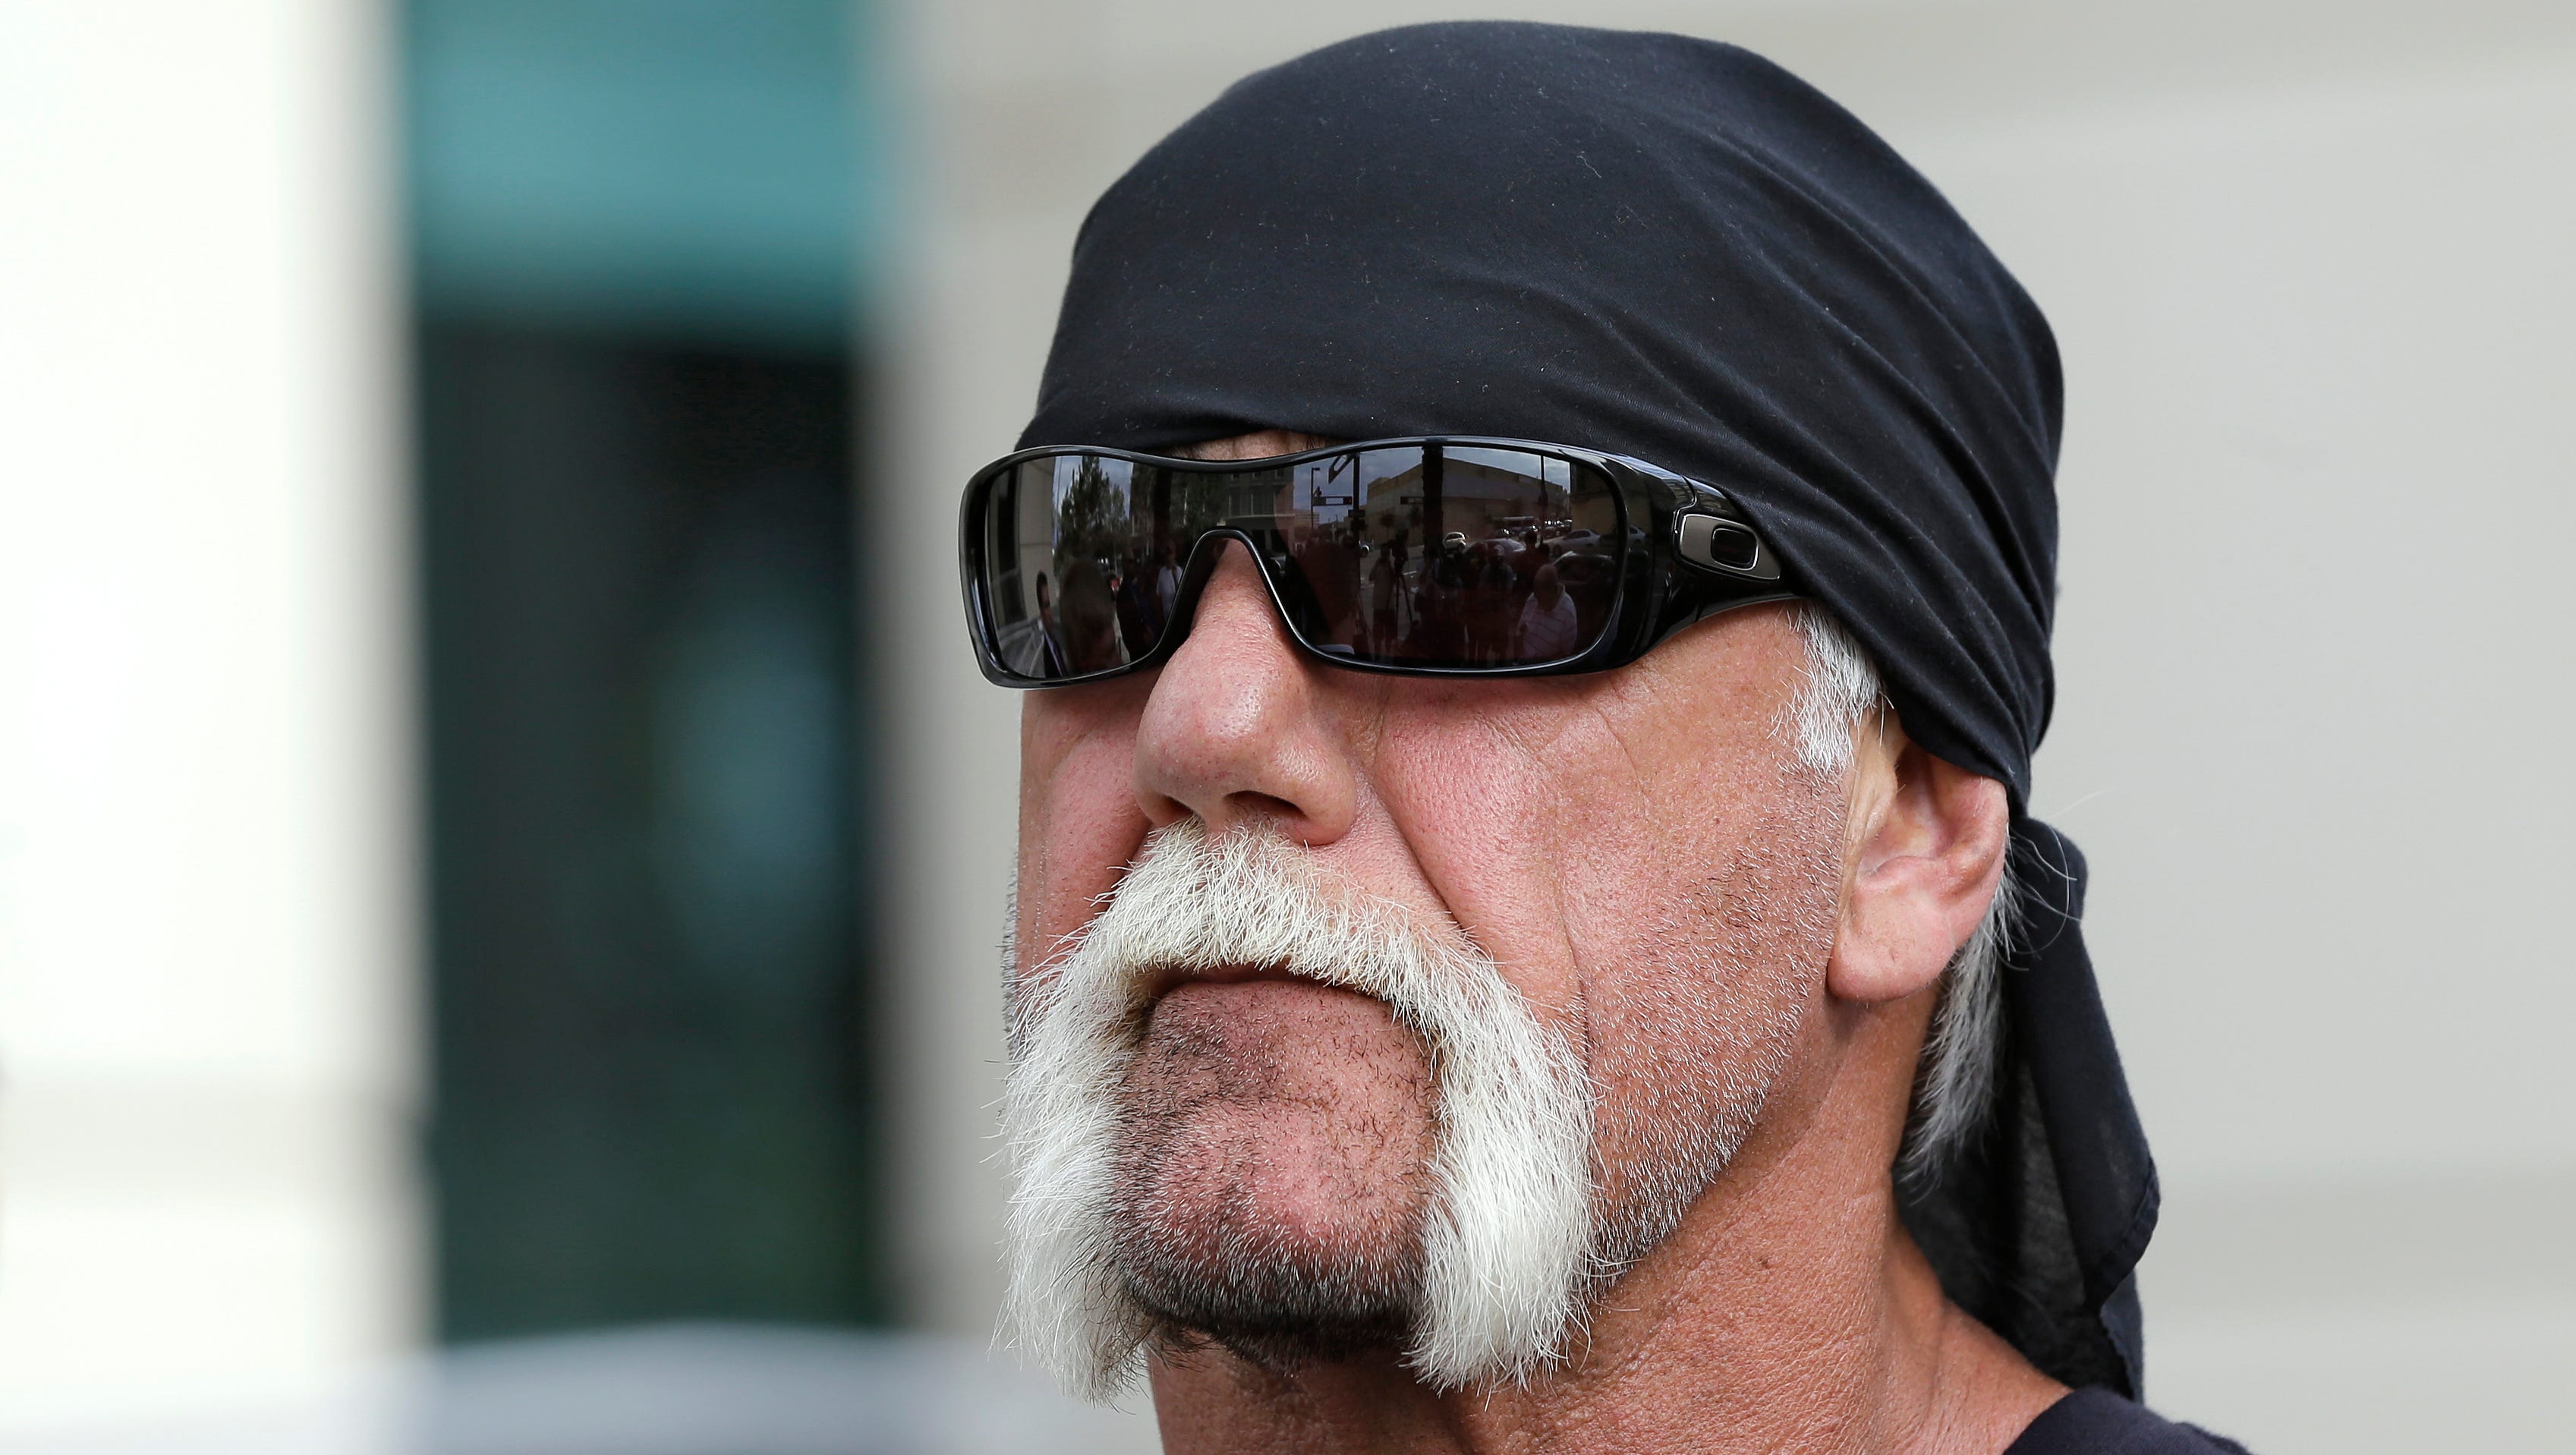 Hulk Hogan sex trial against Gawker set to begin